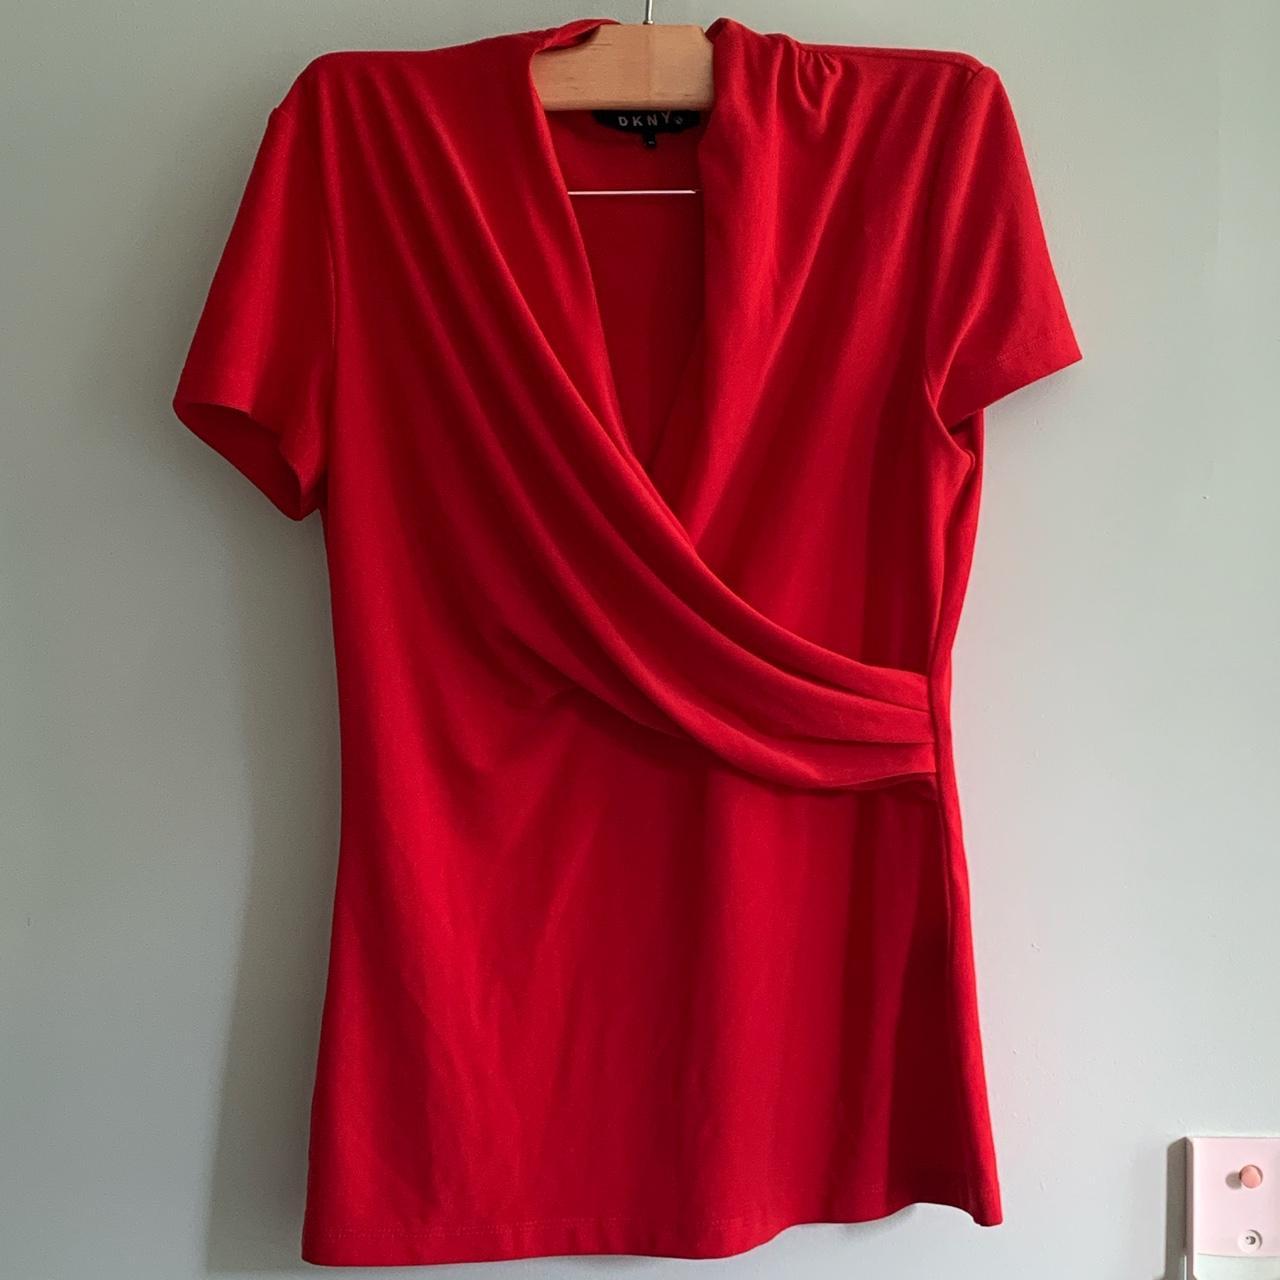 DKNY Women's Red Blouse | Depop